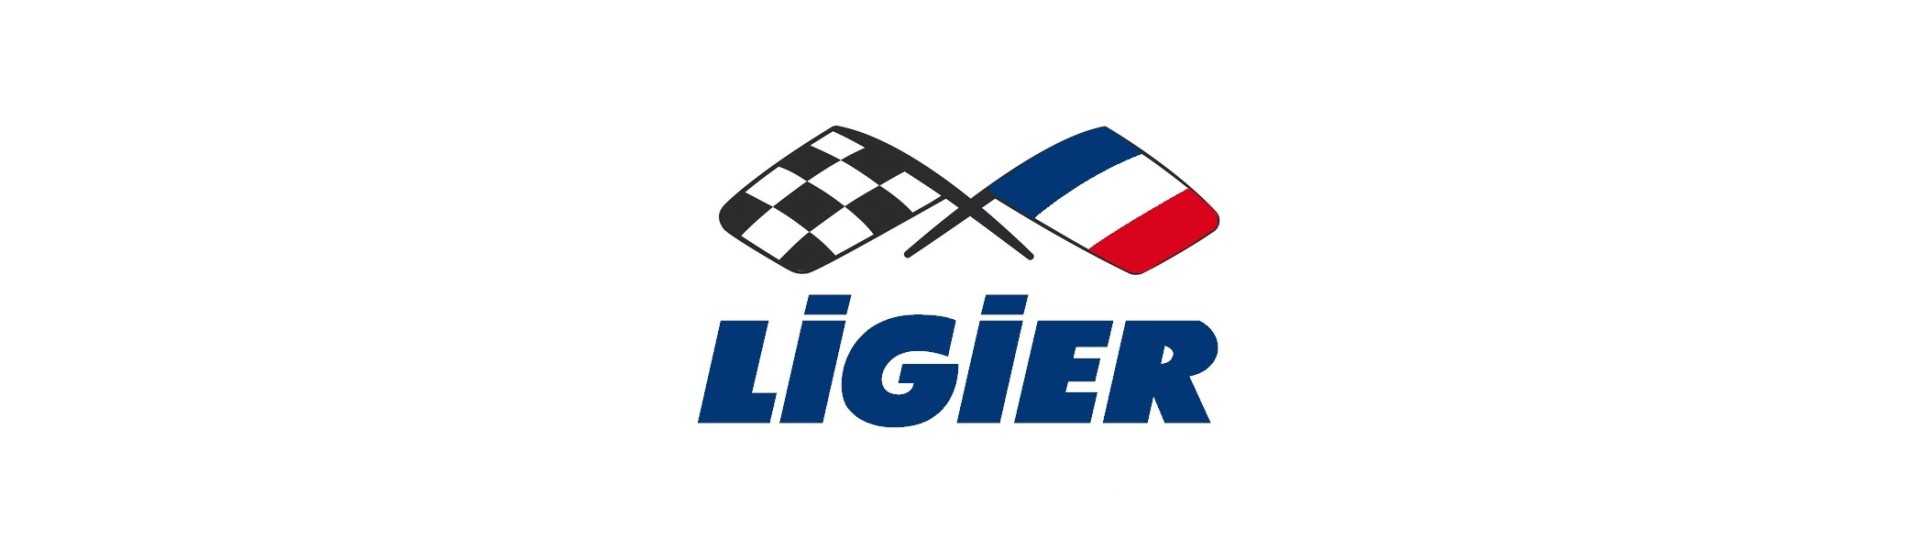 Relais / módulo de carro eletrônico sem permissão Ligier